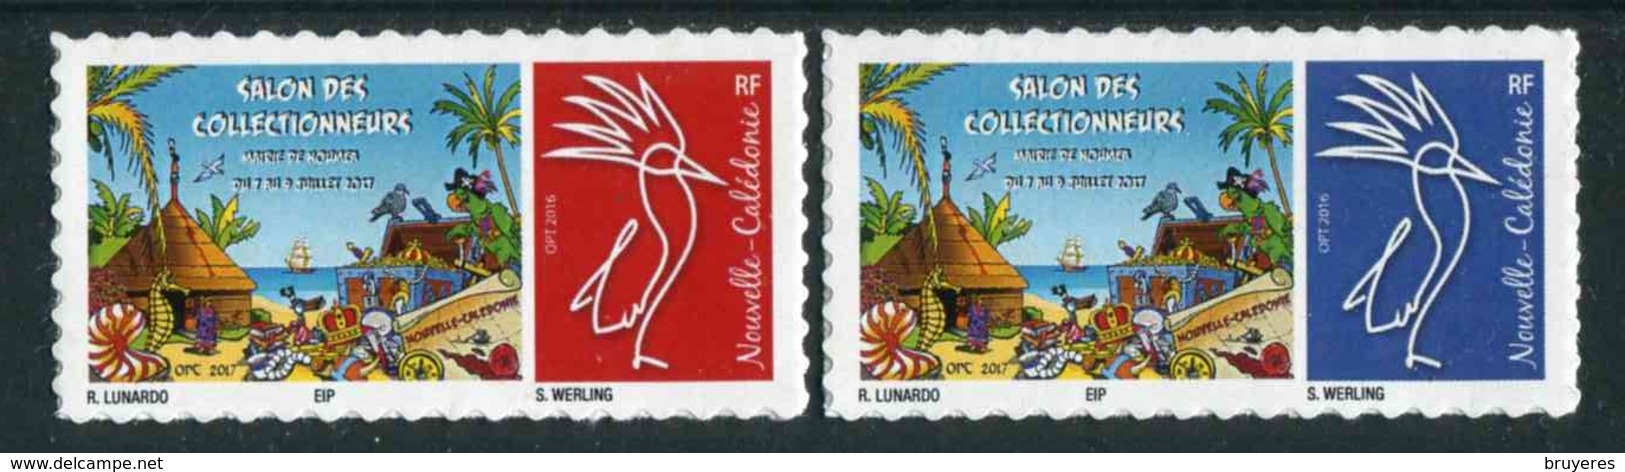 Timbres ** De 2017 Autocollant "Salon Des Collectionneurs 2017 - Mairie De Nouméa" - Unused Stamps